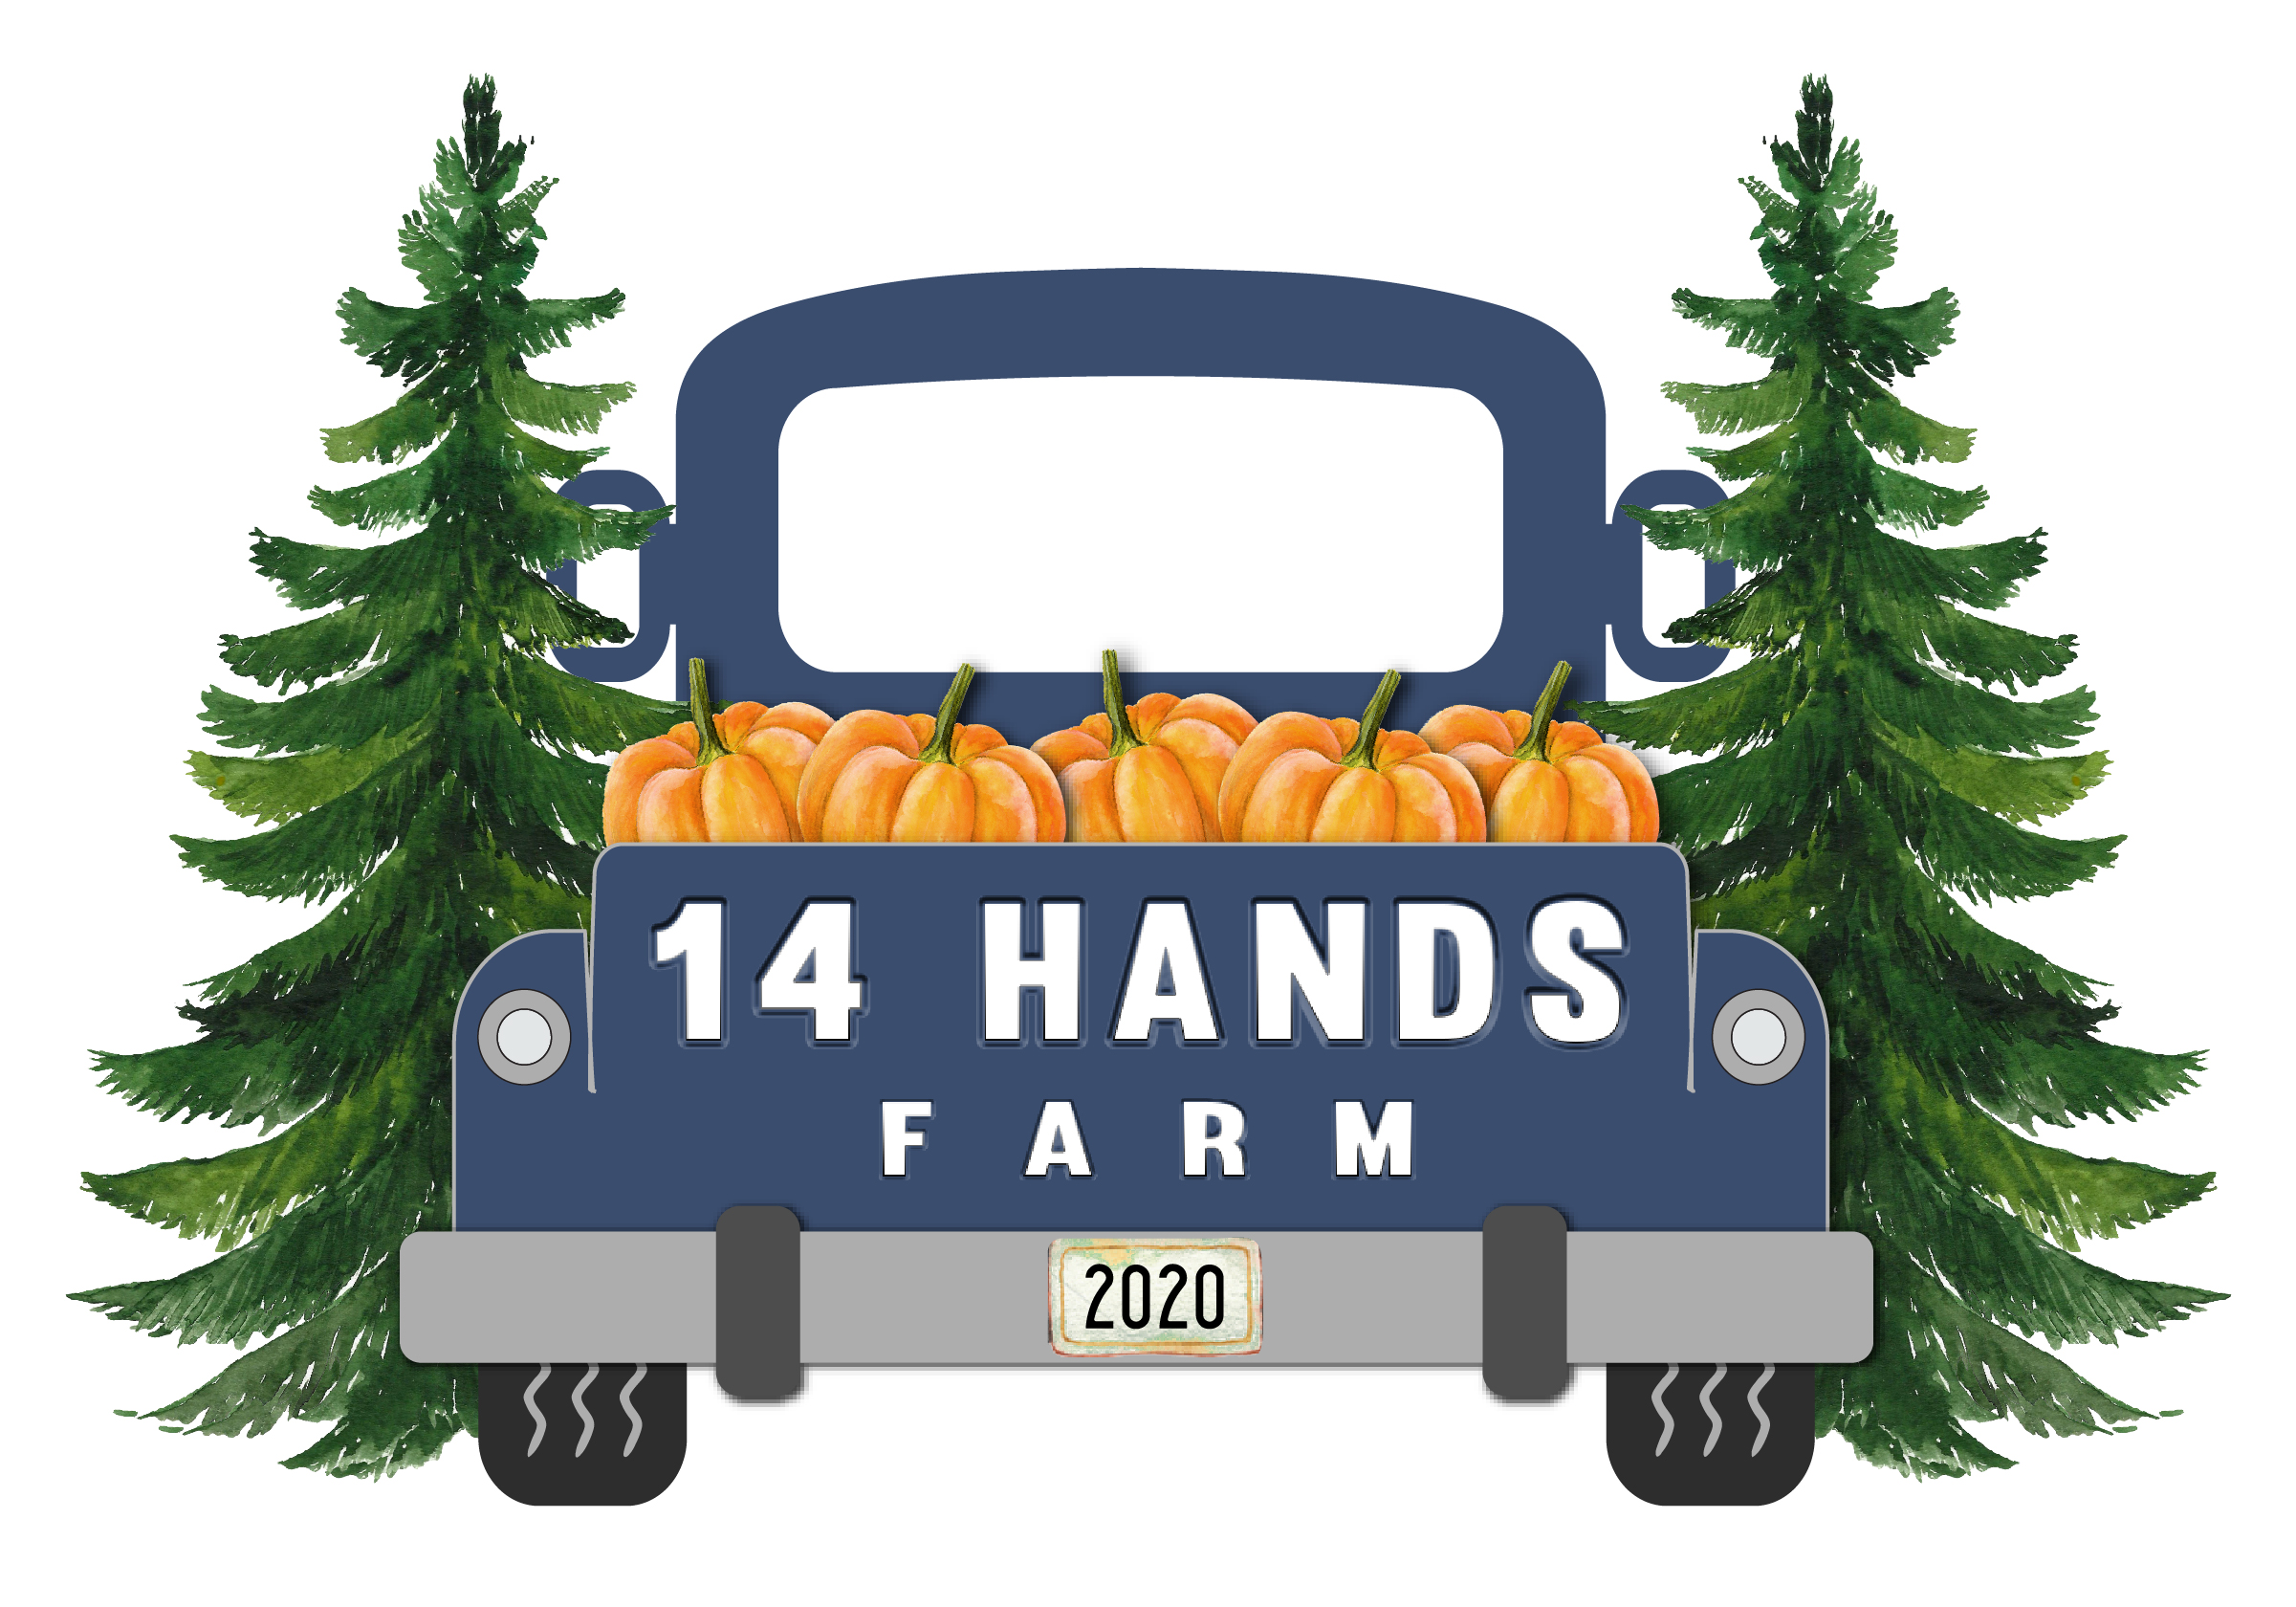 Fourteen Hands Farm